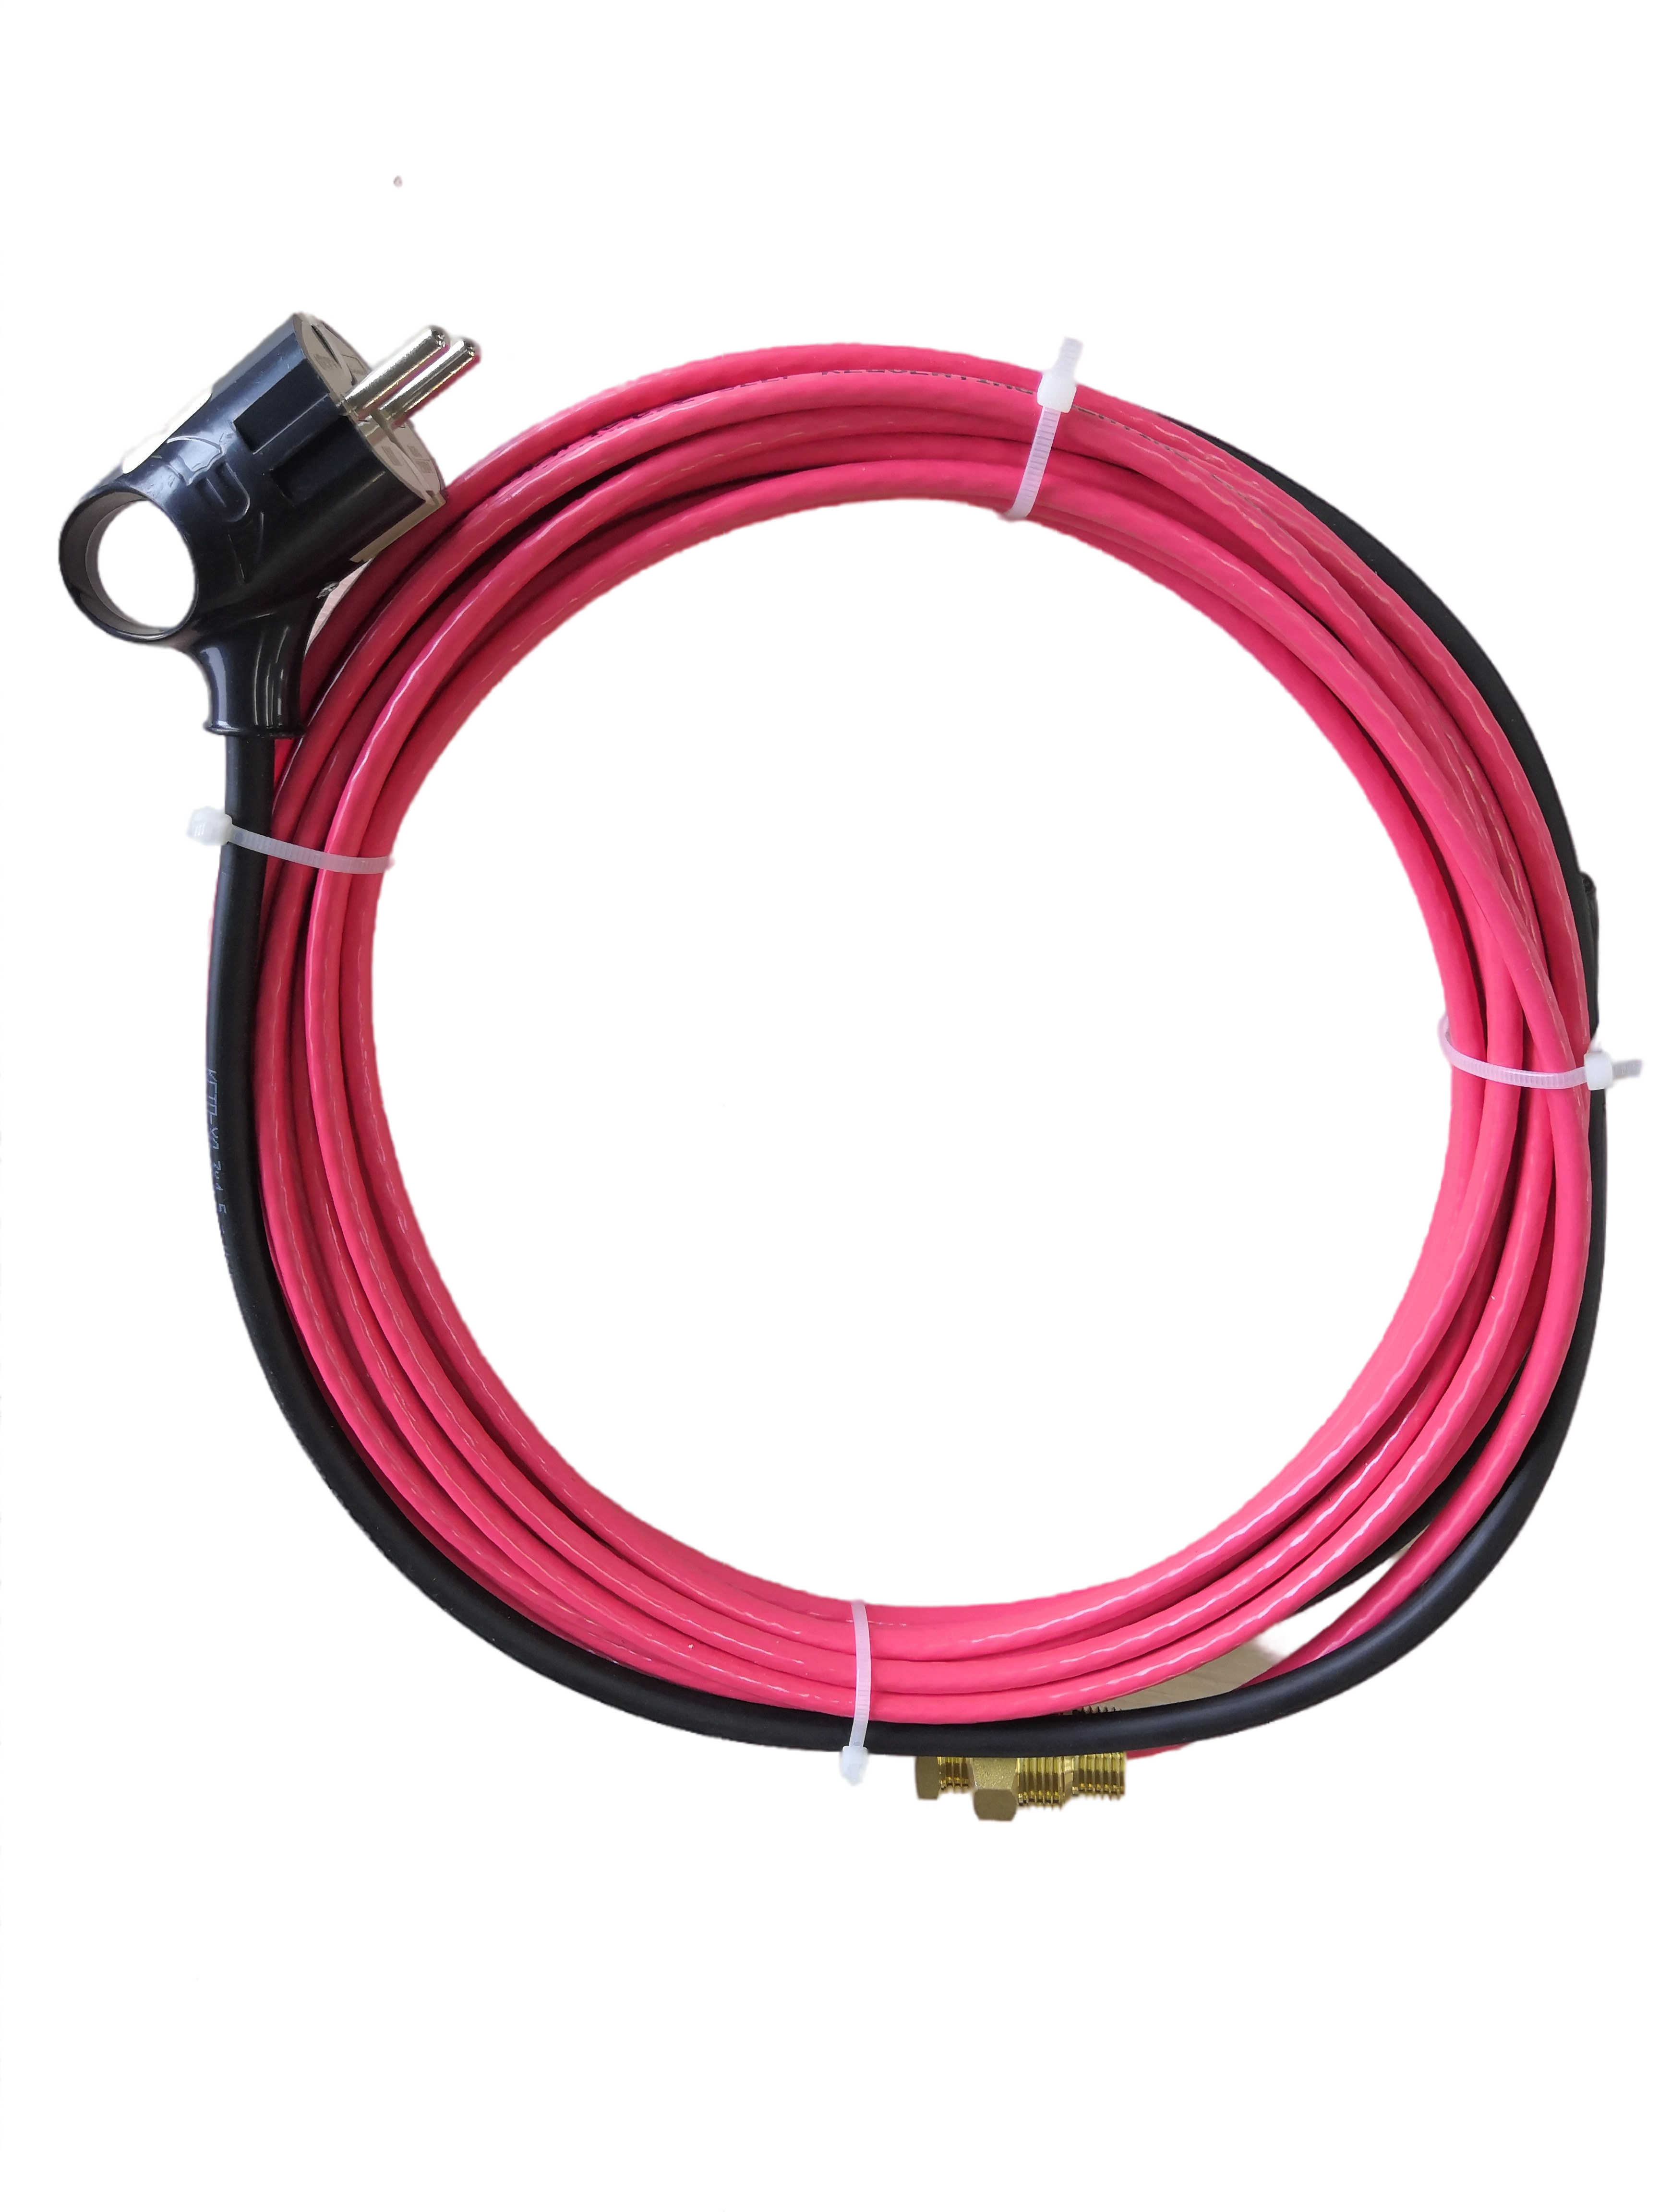 Комплект саморегулирующегося греющего кабеля Водолей 17HTM-2CT (12м) уплотнитель для ввода кабеля для шкафов cae cqe dkc